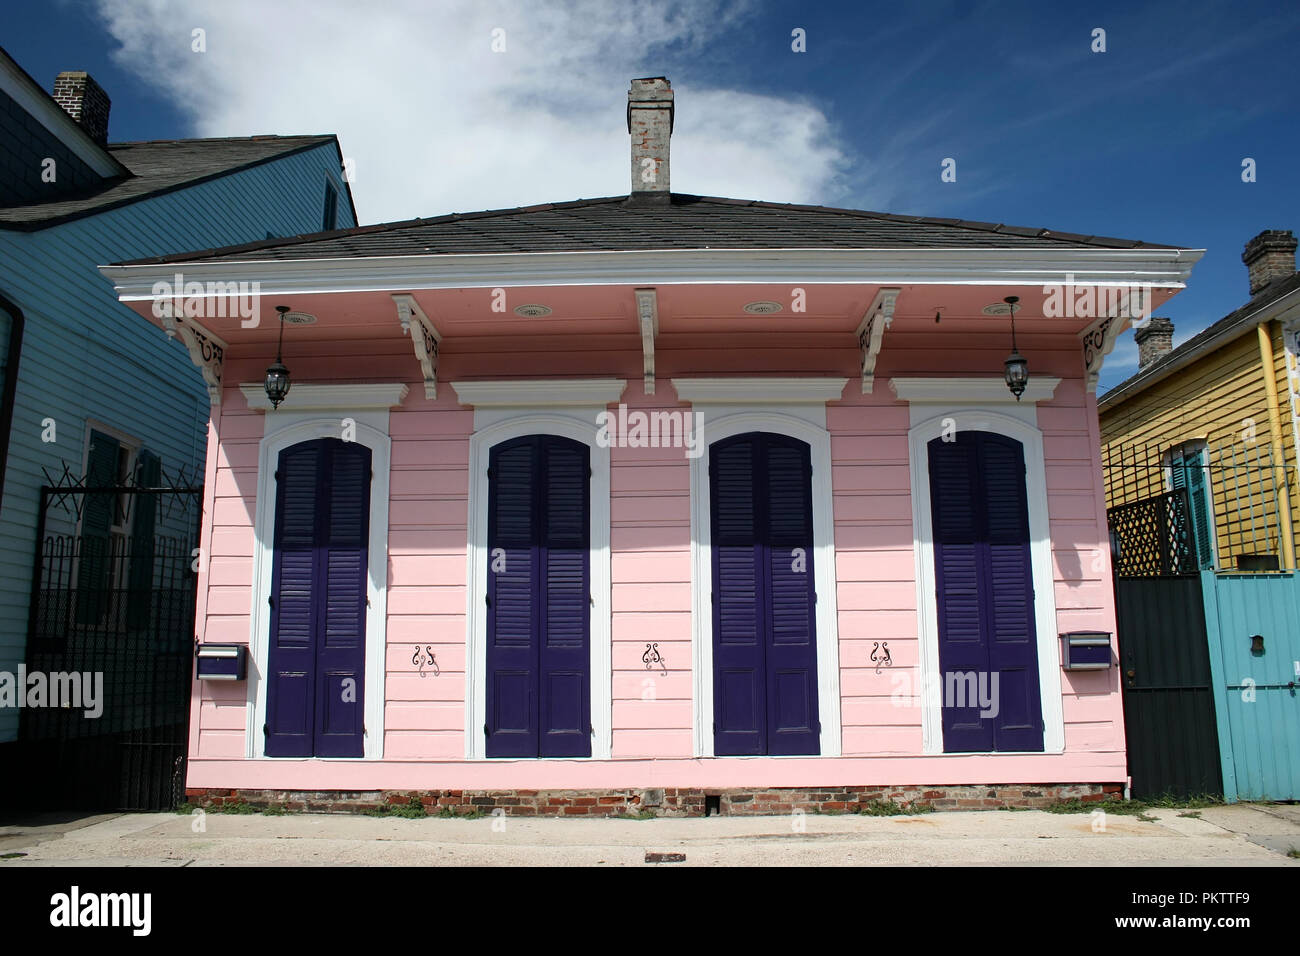 Tipiche Case in historica center di New Orleans Foto Stock